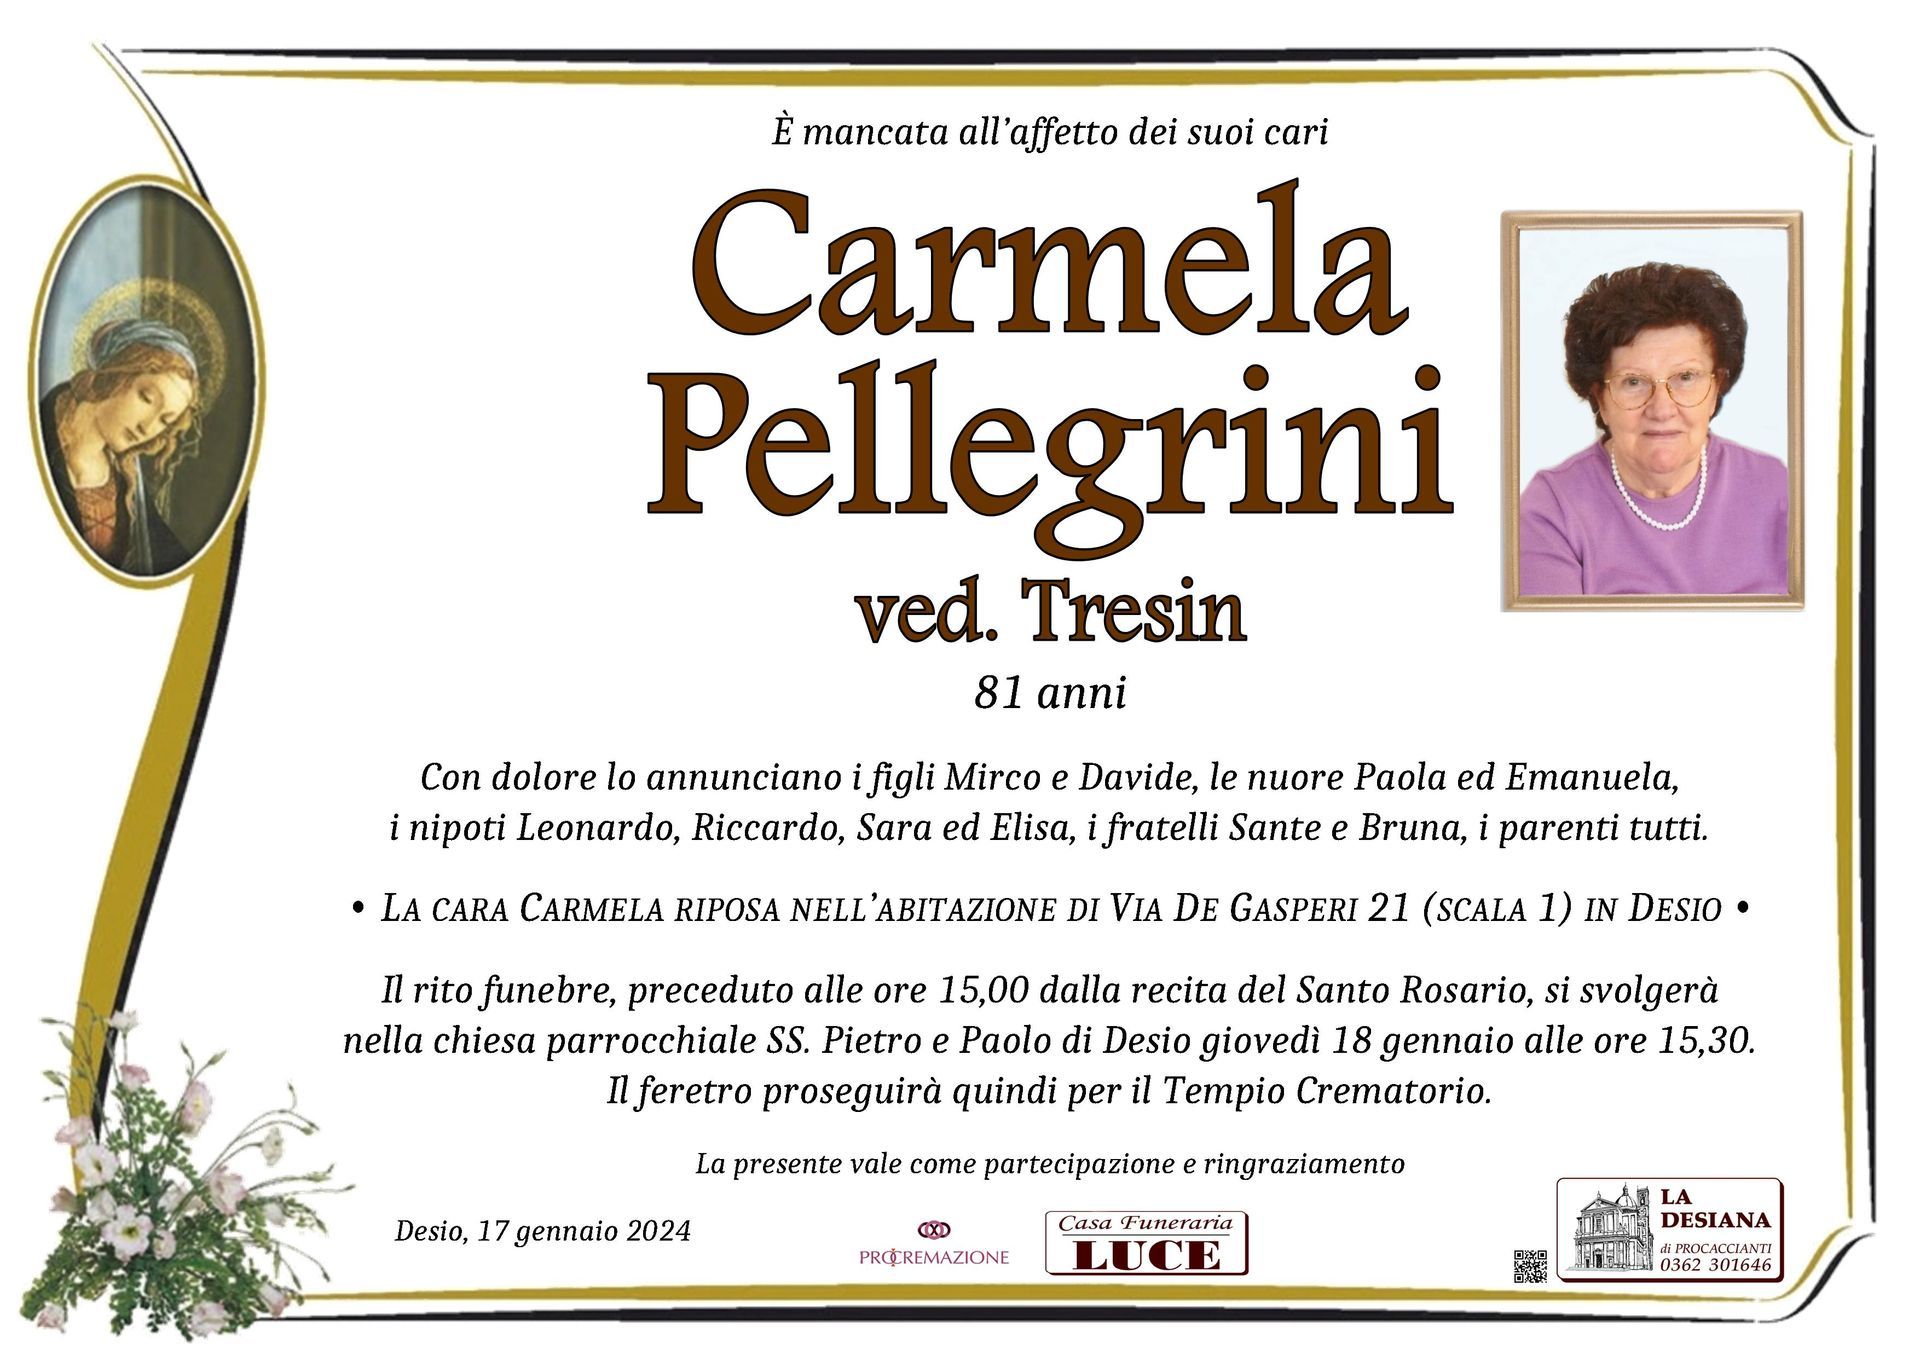 Carmela Pellegrini ved. Tresin